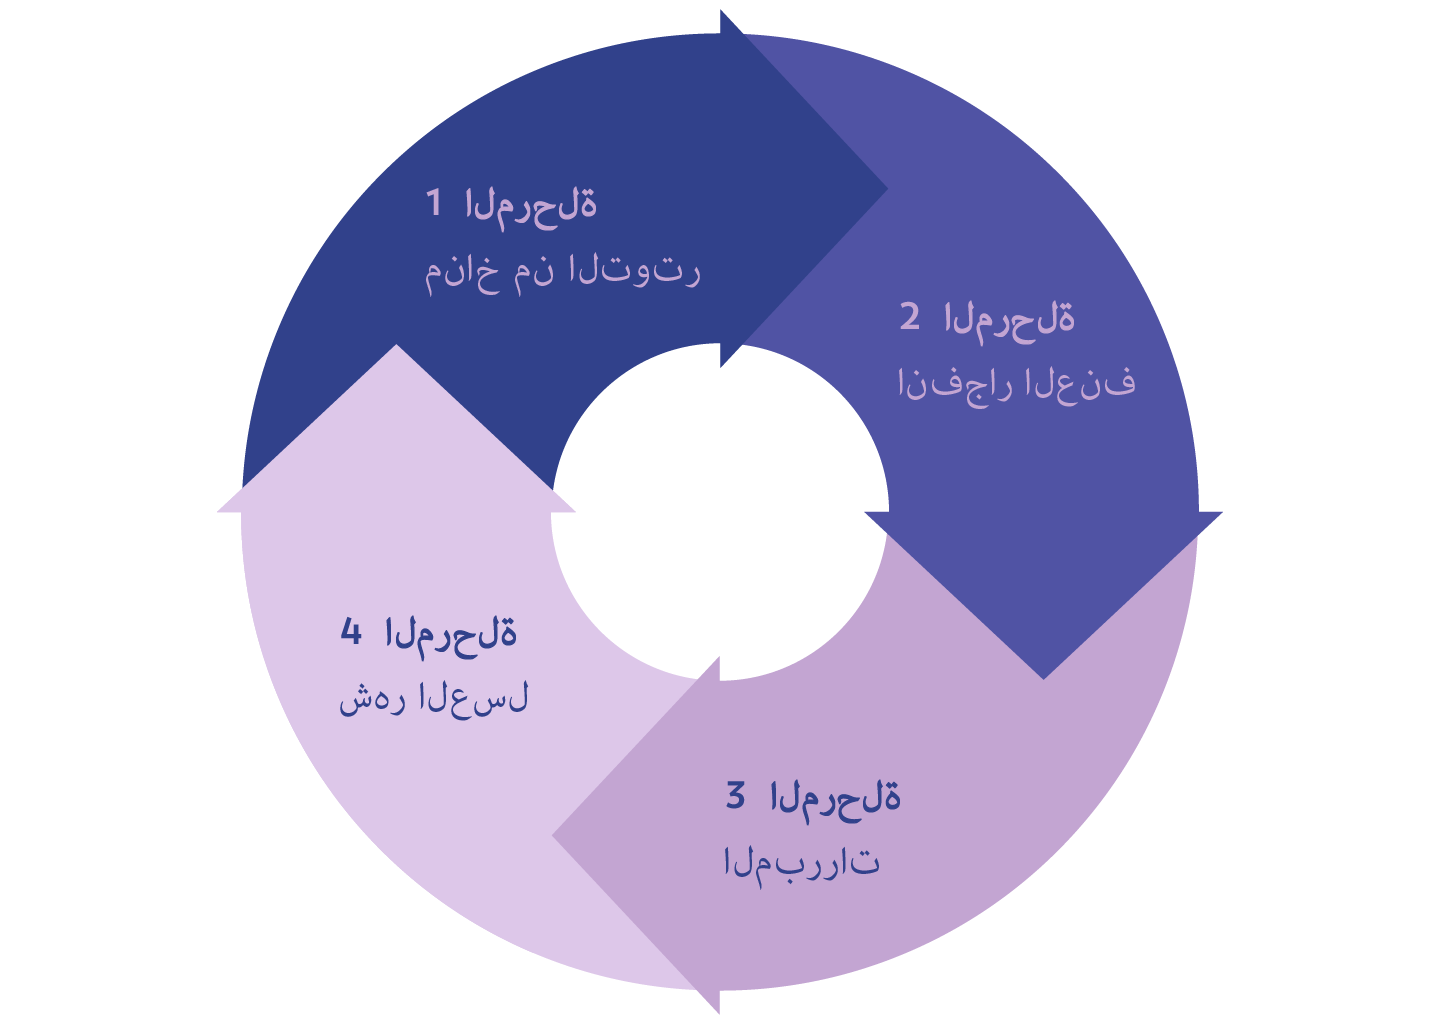 دائرة تمثل دورة العنف بأربعة أسهم تمثل كل مرحلة: المرحلة 1 مناخ التوتر ، المرحلة 2 انفجار العنف ، المرحلة 3 المبررات ، المرحلة 4 شهر العسل.